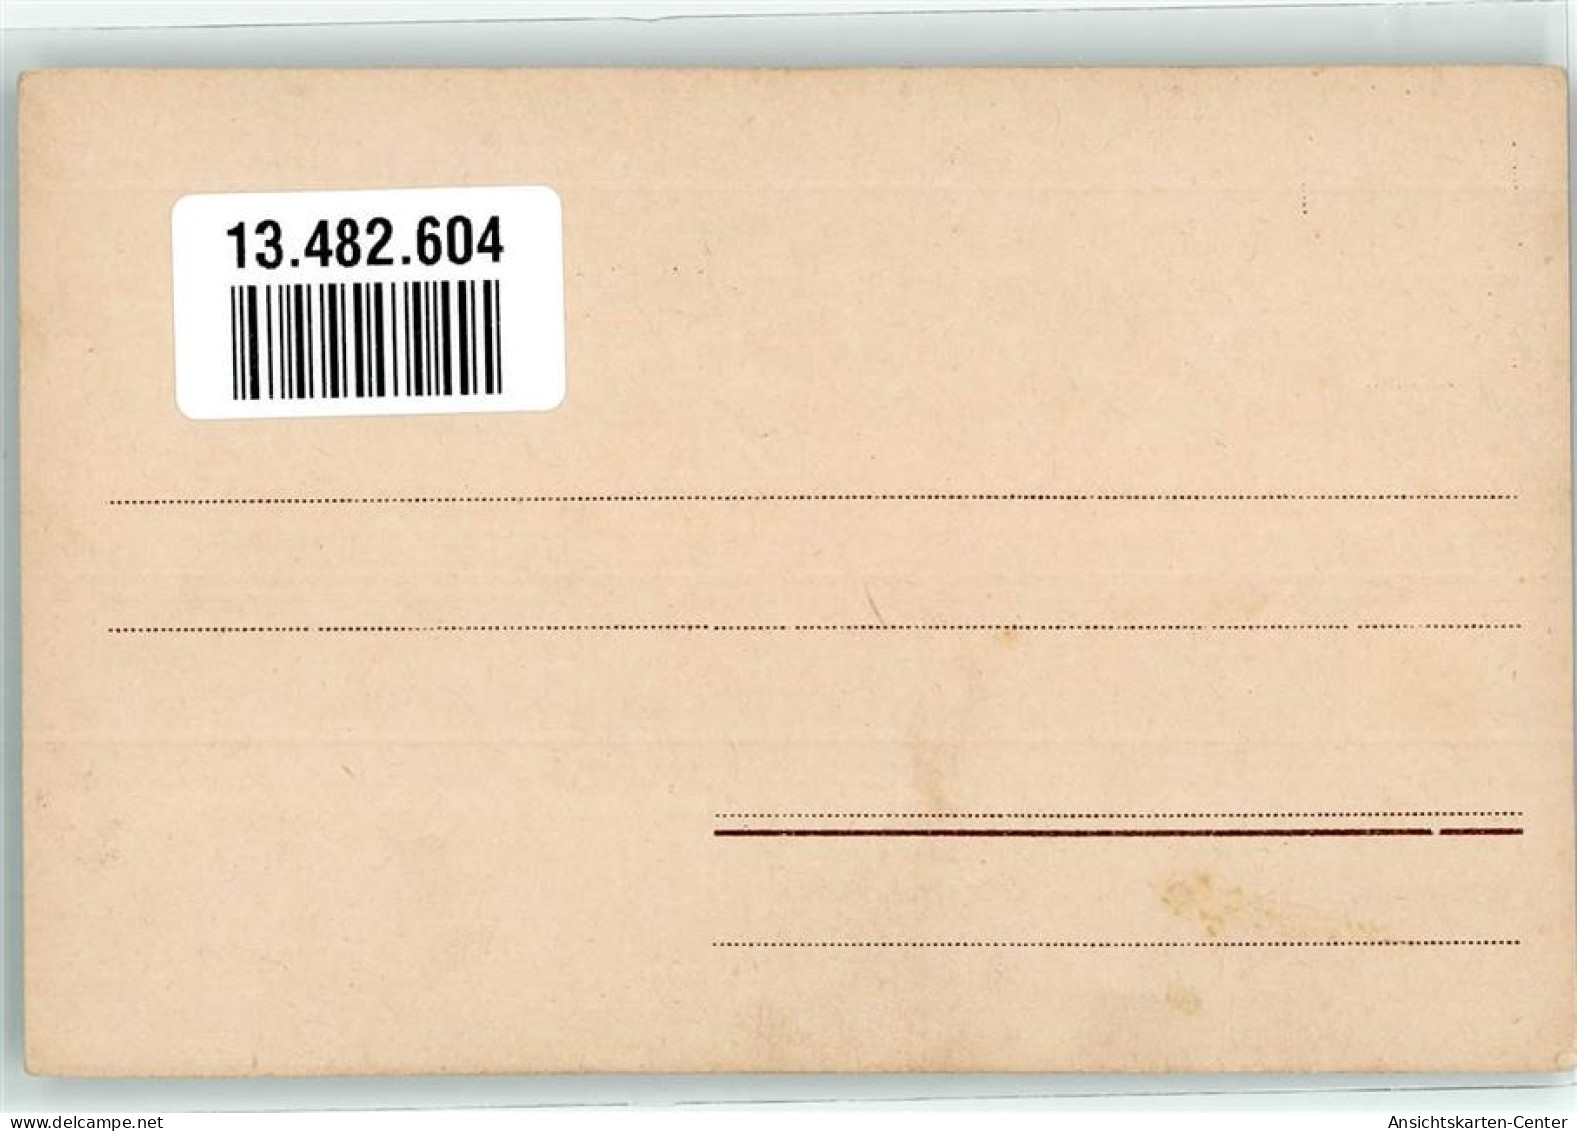 13482604 - Wald Vogel - Postal Services